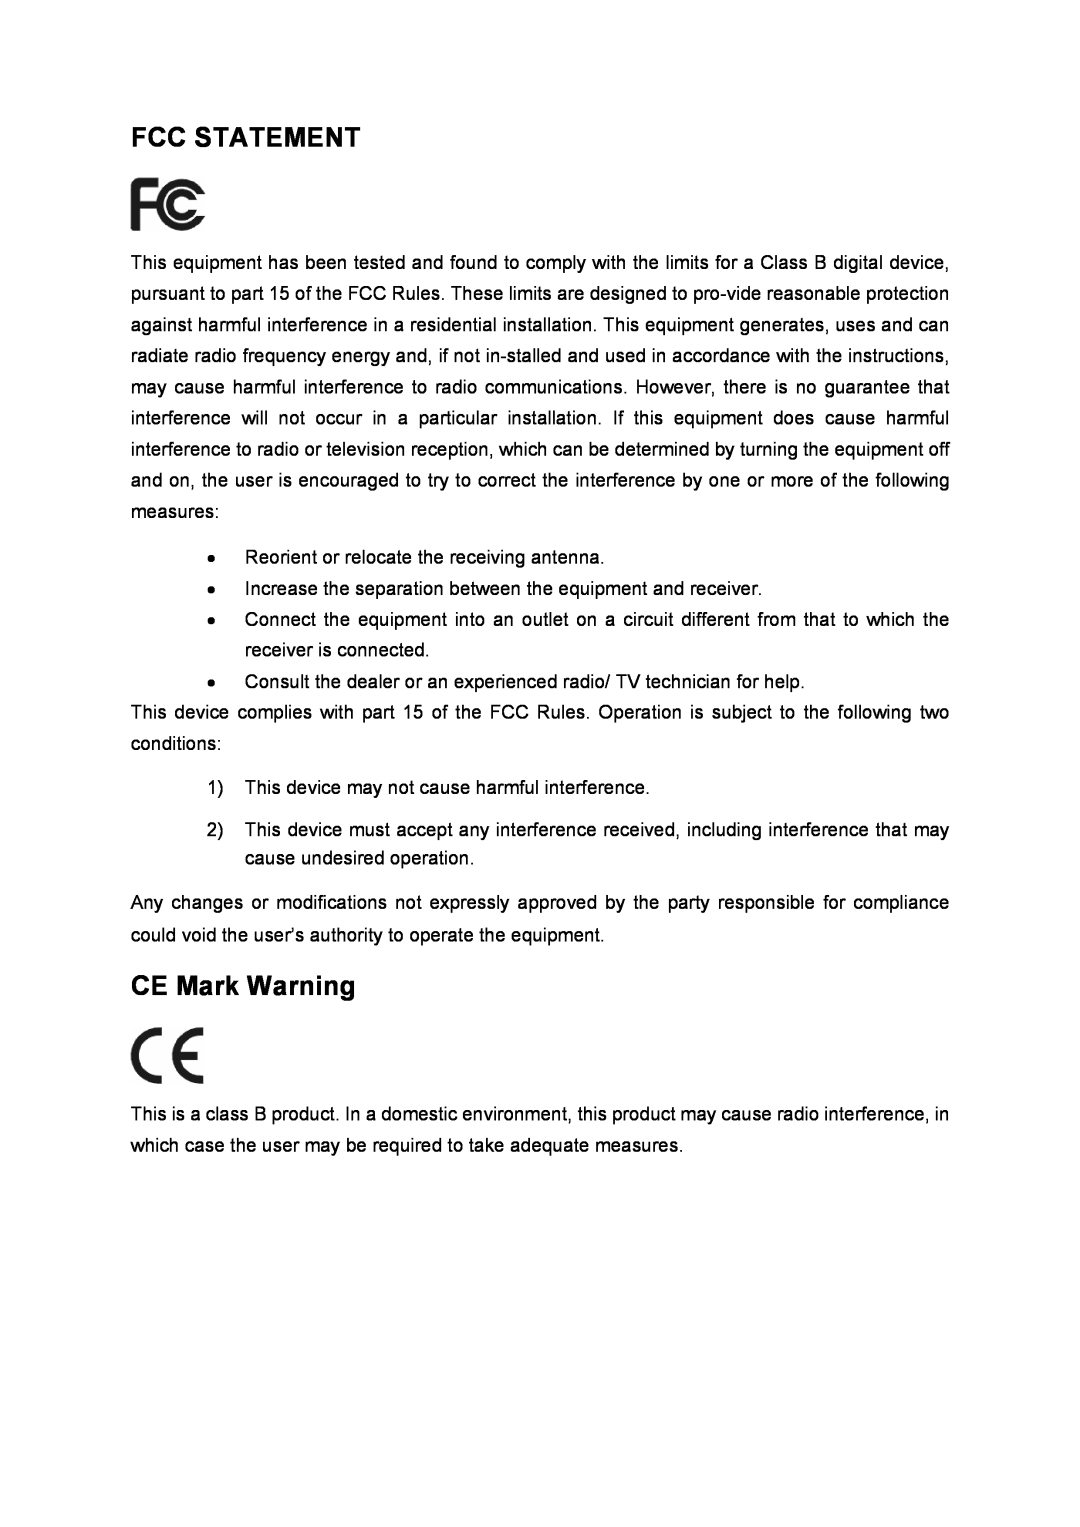 TP-Link TD-8816 manual Fcc Statement, CE Mark Warning 